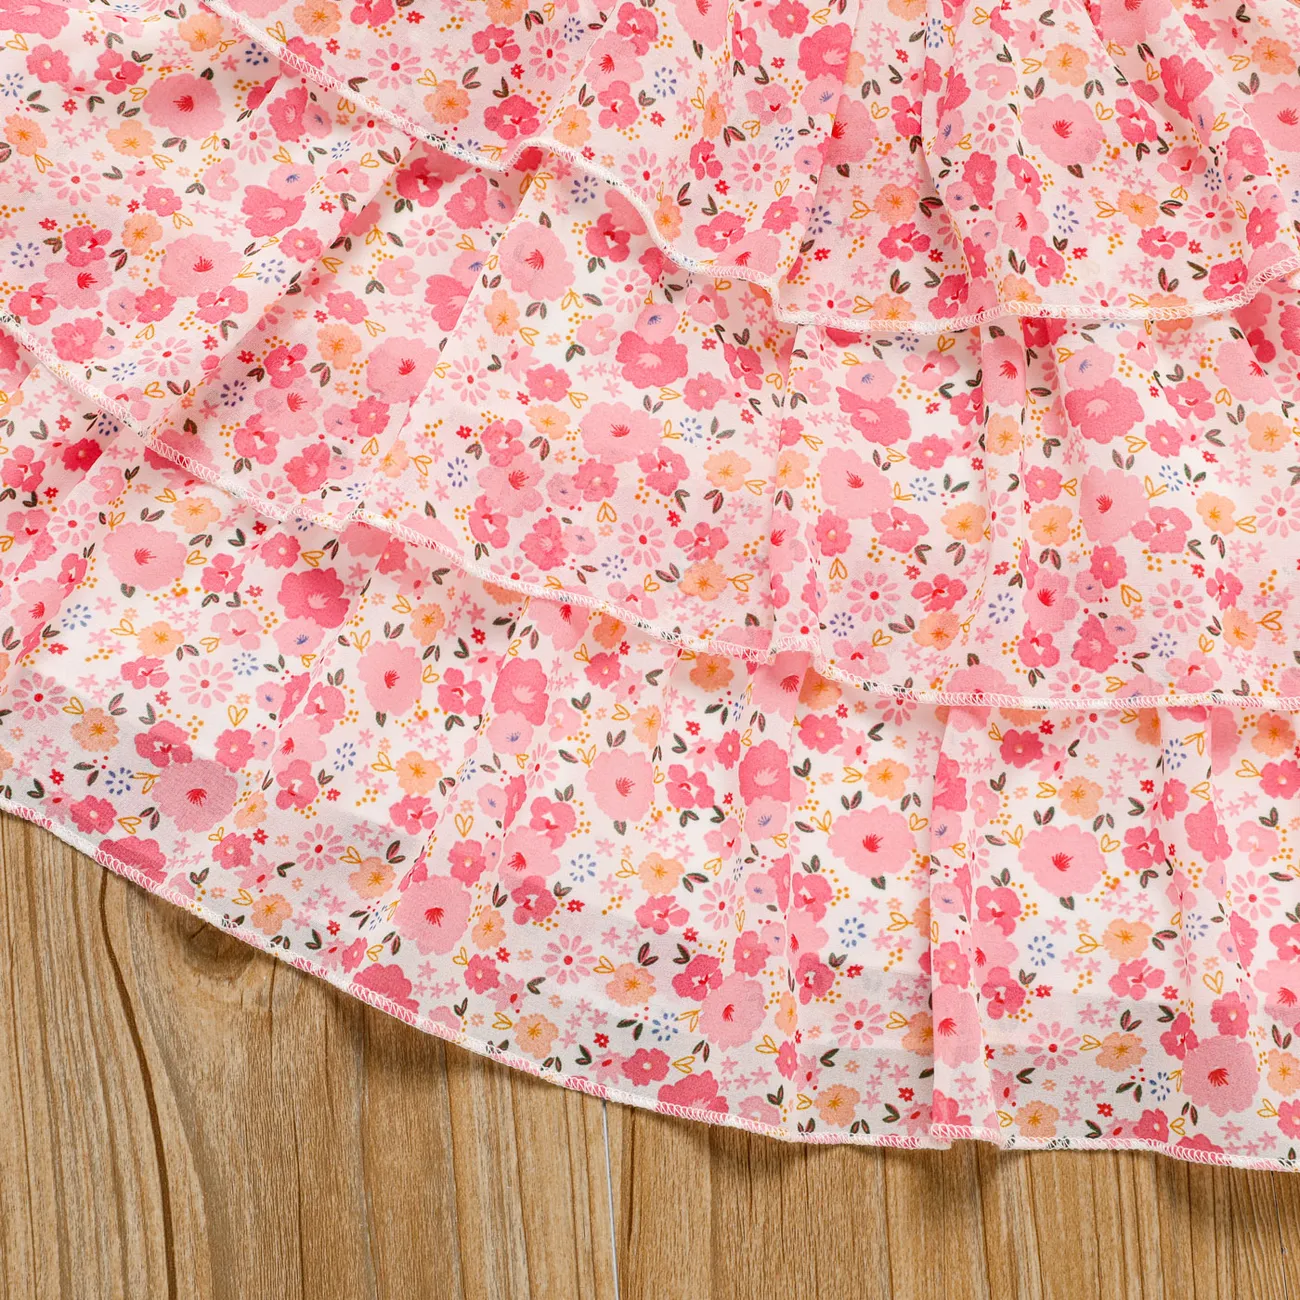 Toddler Girl Sweet Floral Print Smocked Ruffled Sleeveless Dress Pink big image 1